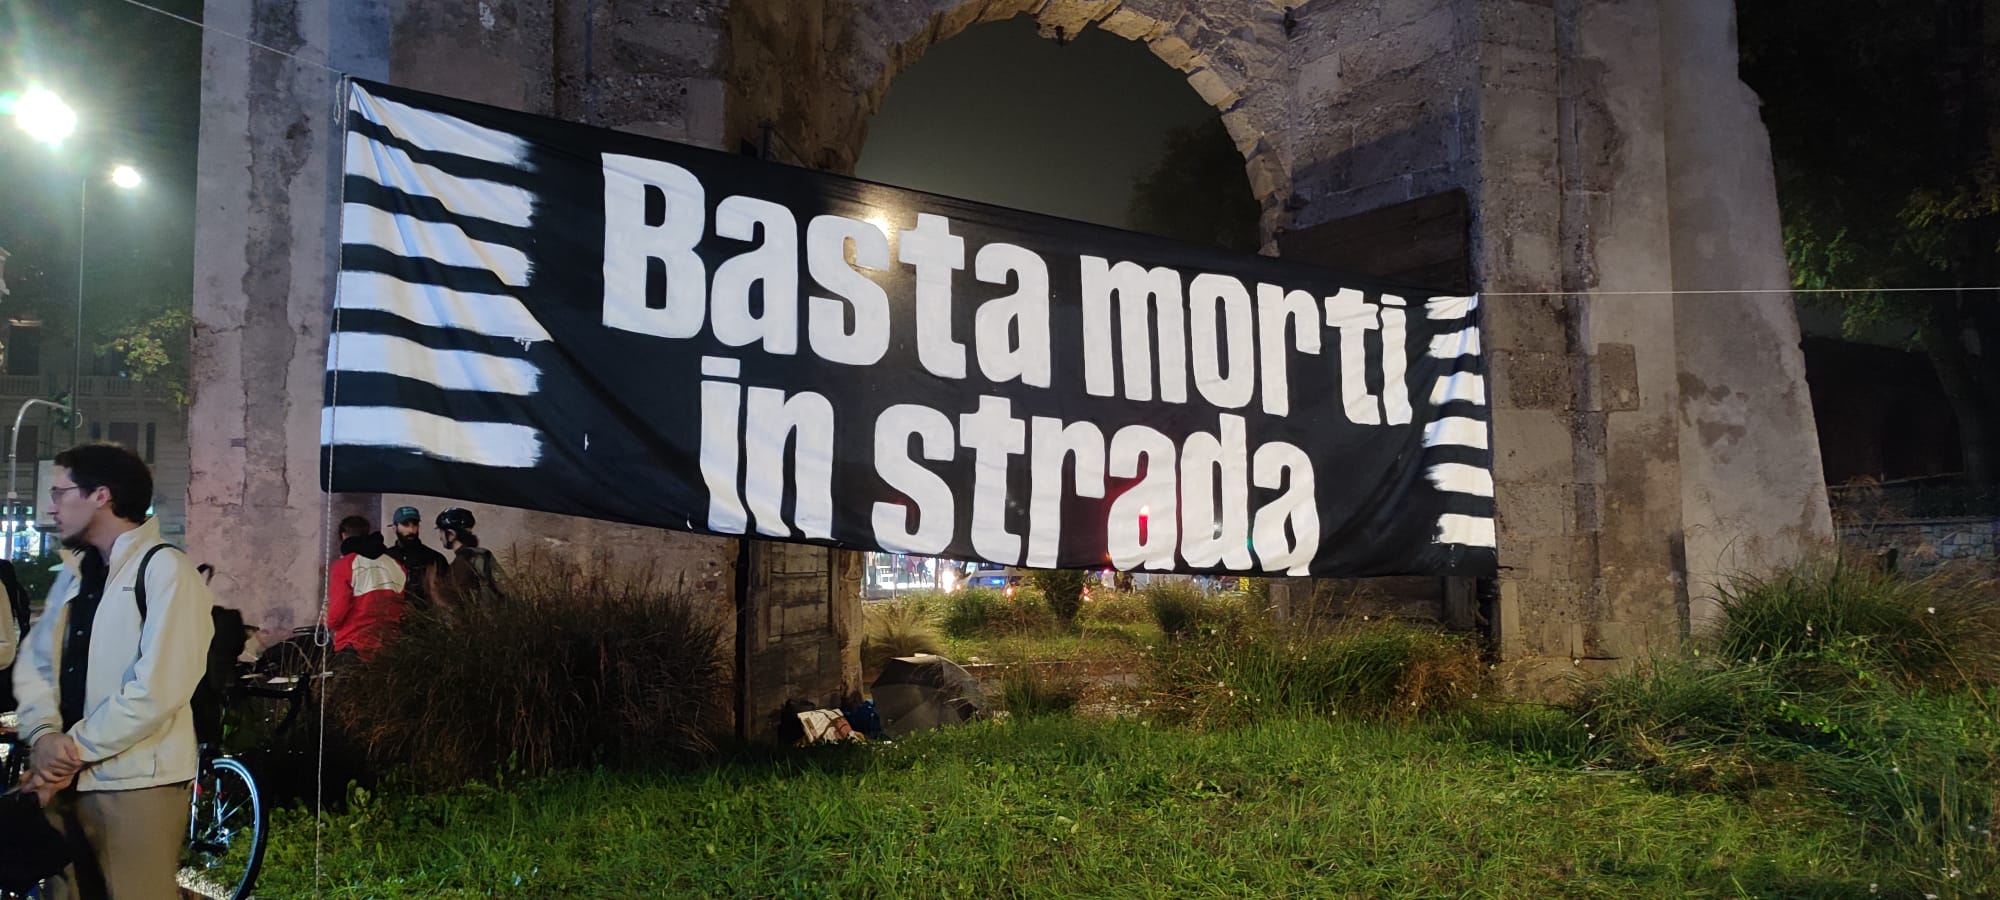 MOBILITÀ, PRESIDIO CICLISTI: "BASTA MORTI IN STRADA" (FOTO 1)